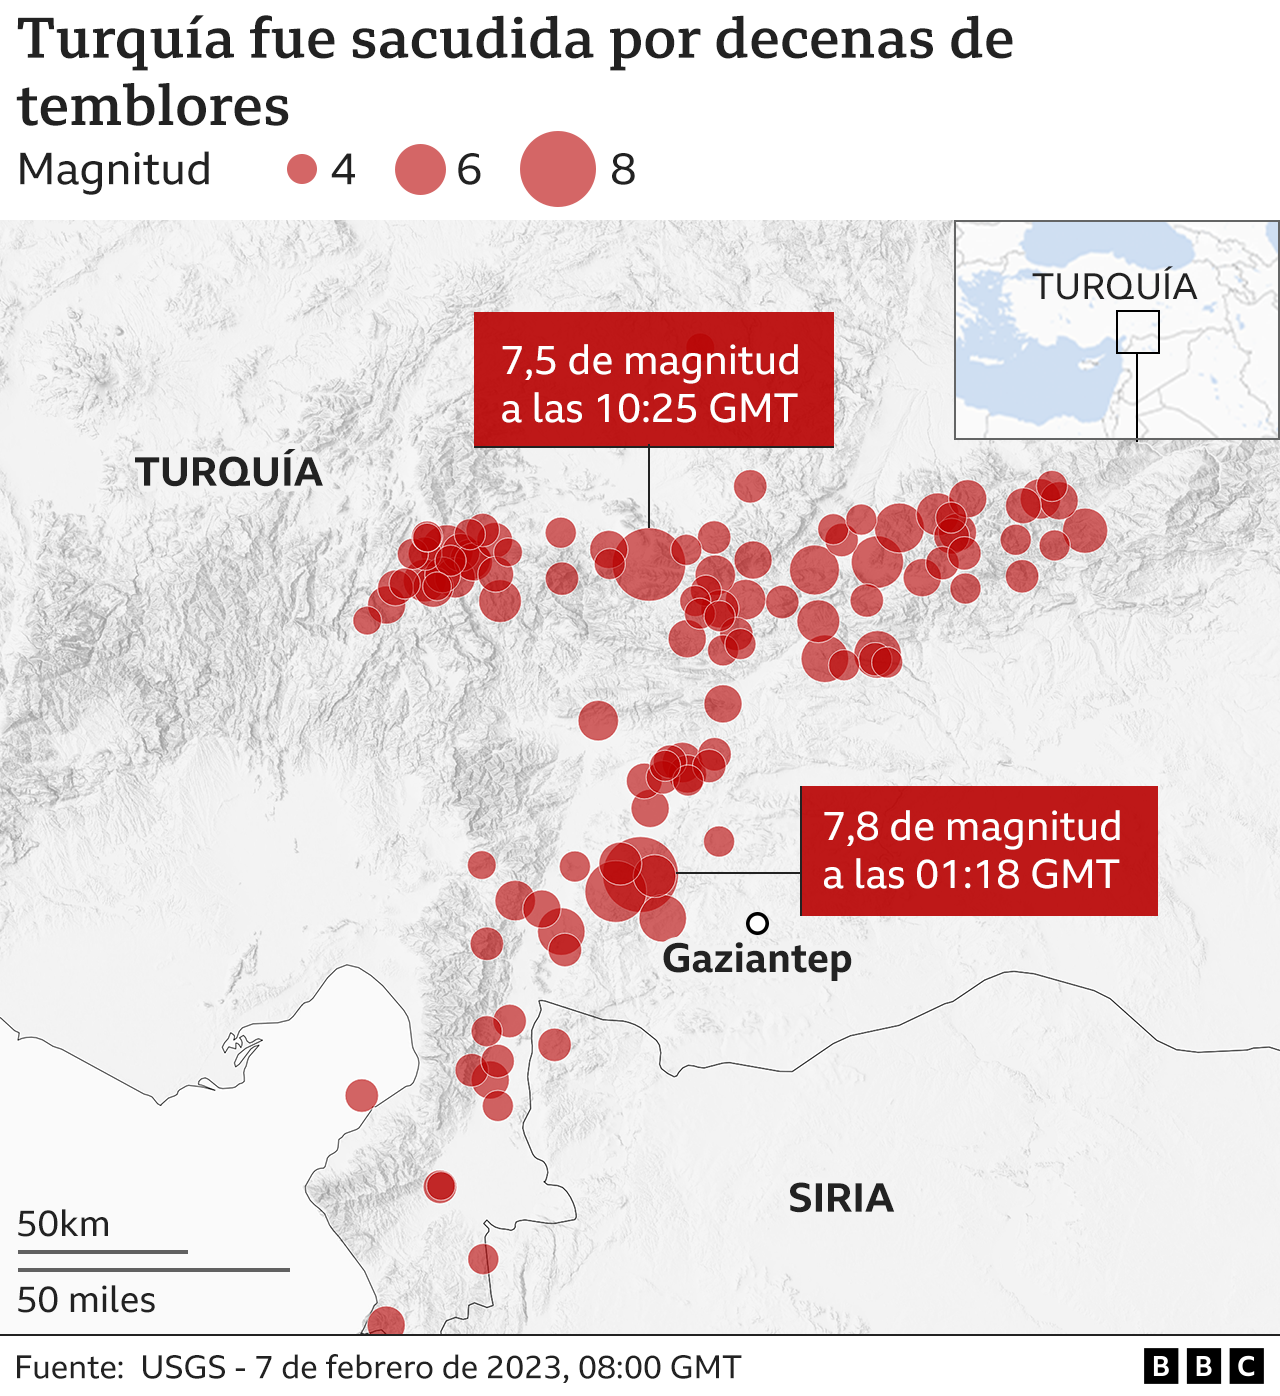 Mapa de Turquía y Siria y los temblores que registró el 6 de febrero de 2023.